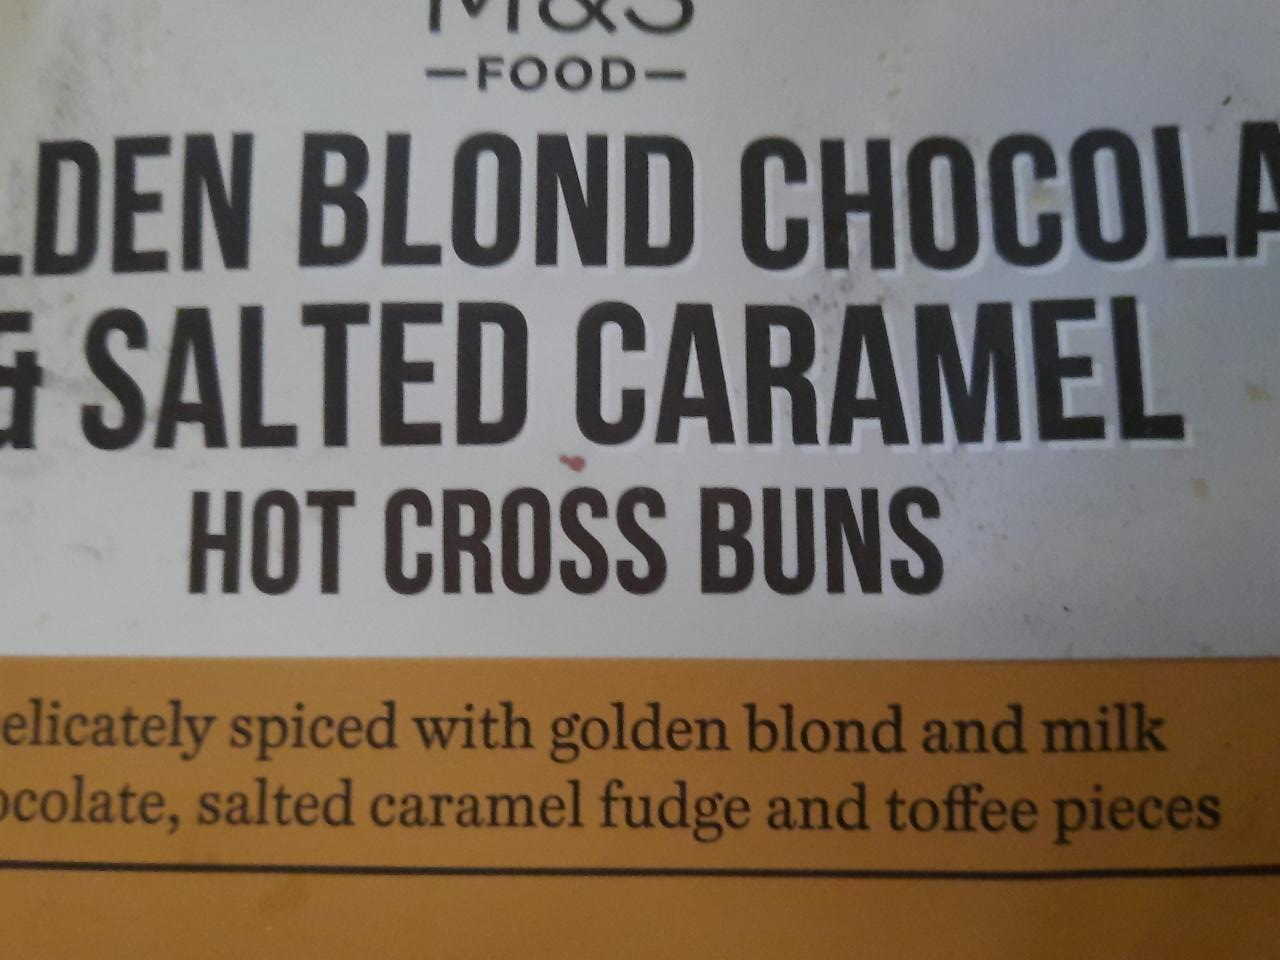 Fotografie - 4 Golden Blond Chocolate & Salted Caramel Hot Cross Buns M&S Food